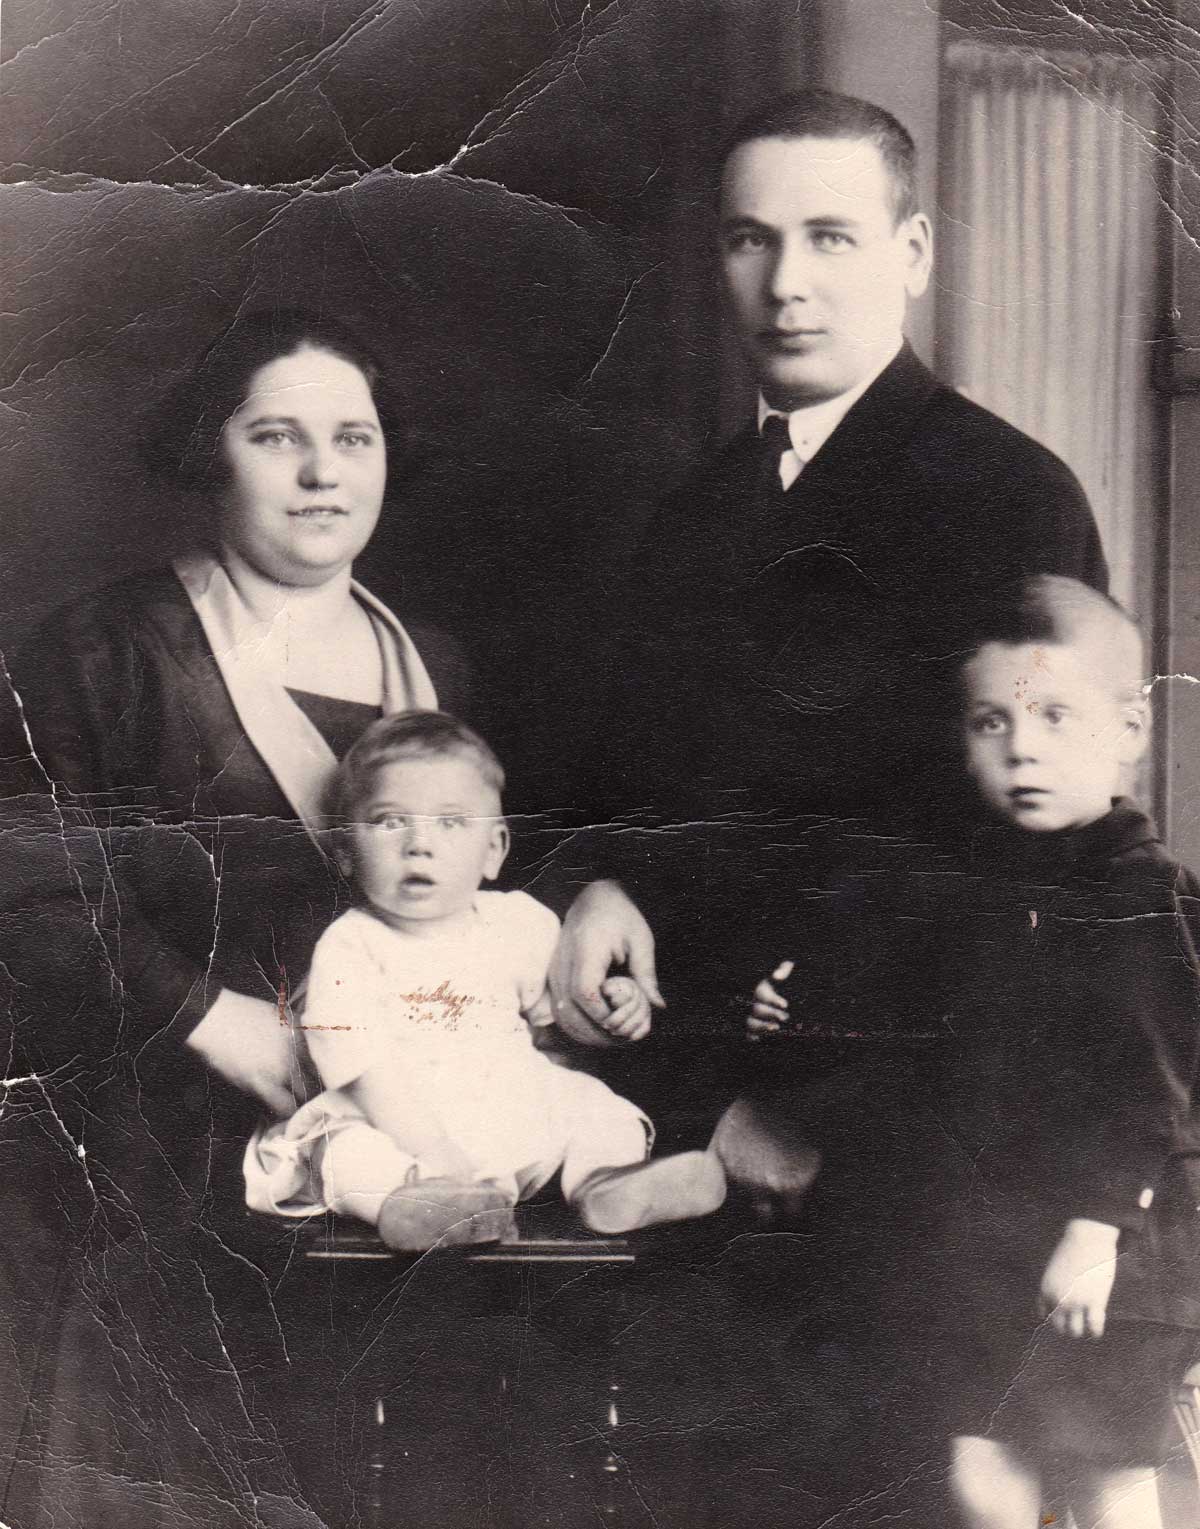 Brian i rodzice 1926